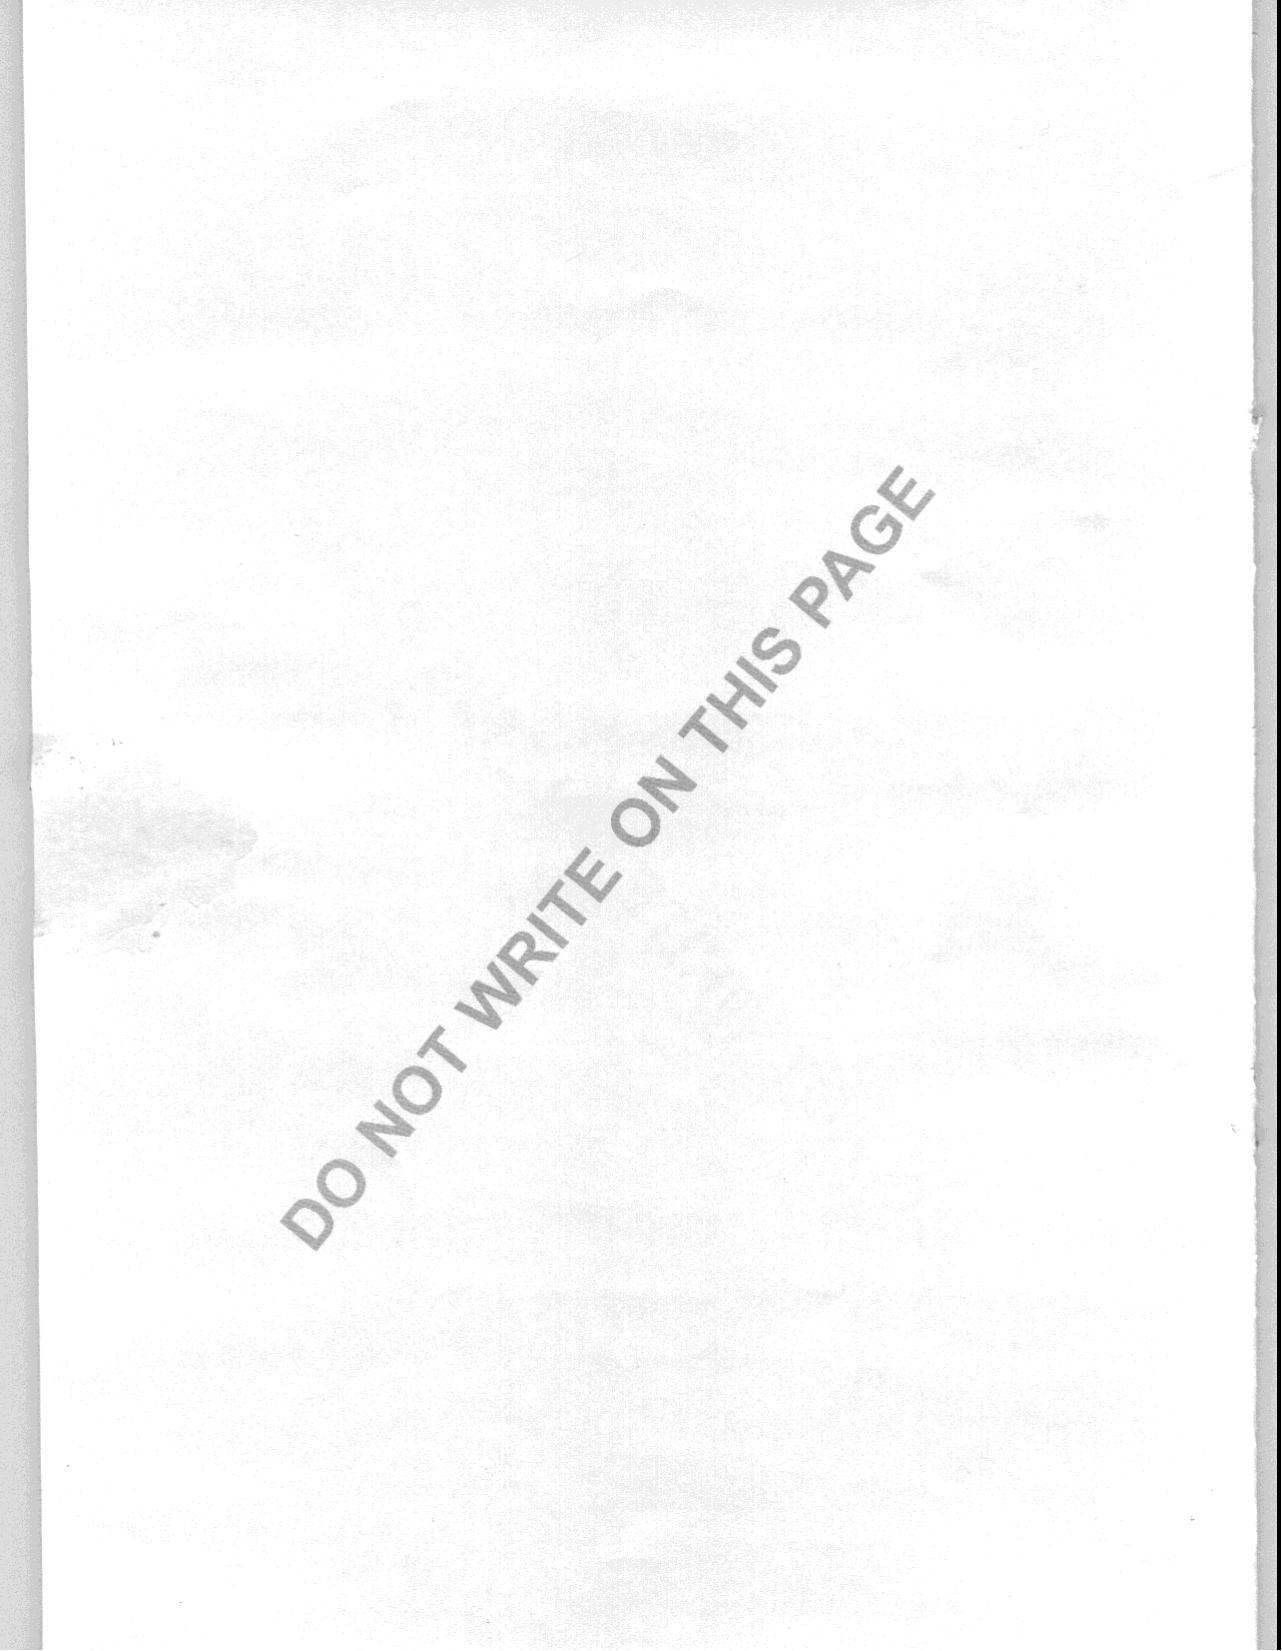 JAM 2008: BT Question Paper - Page 24